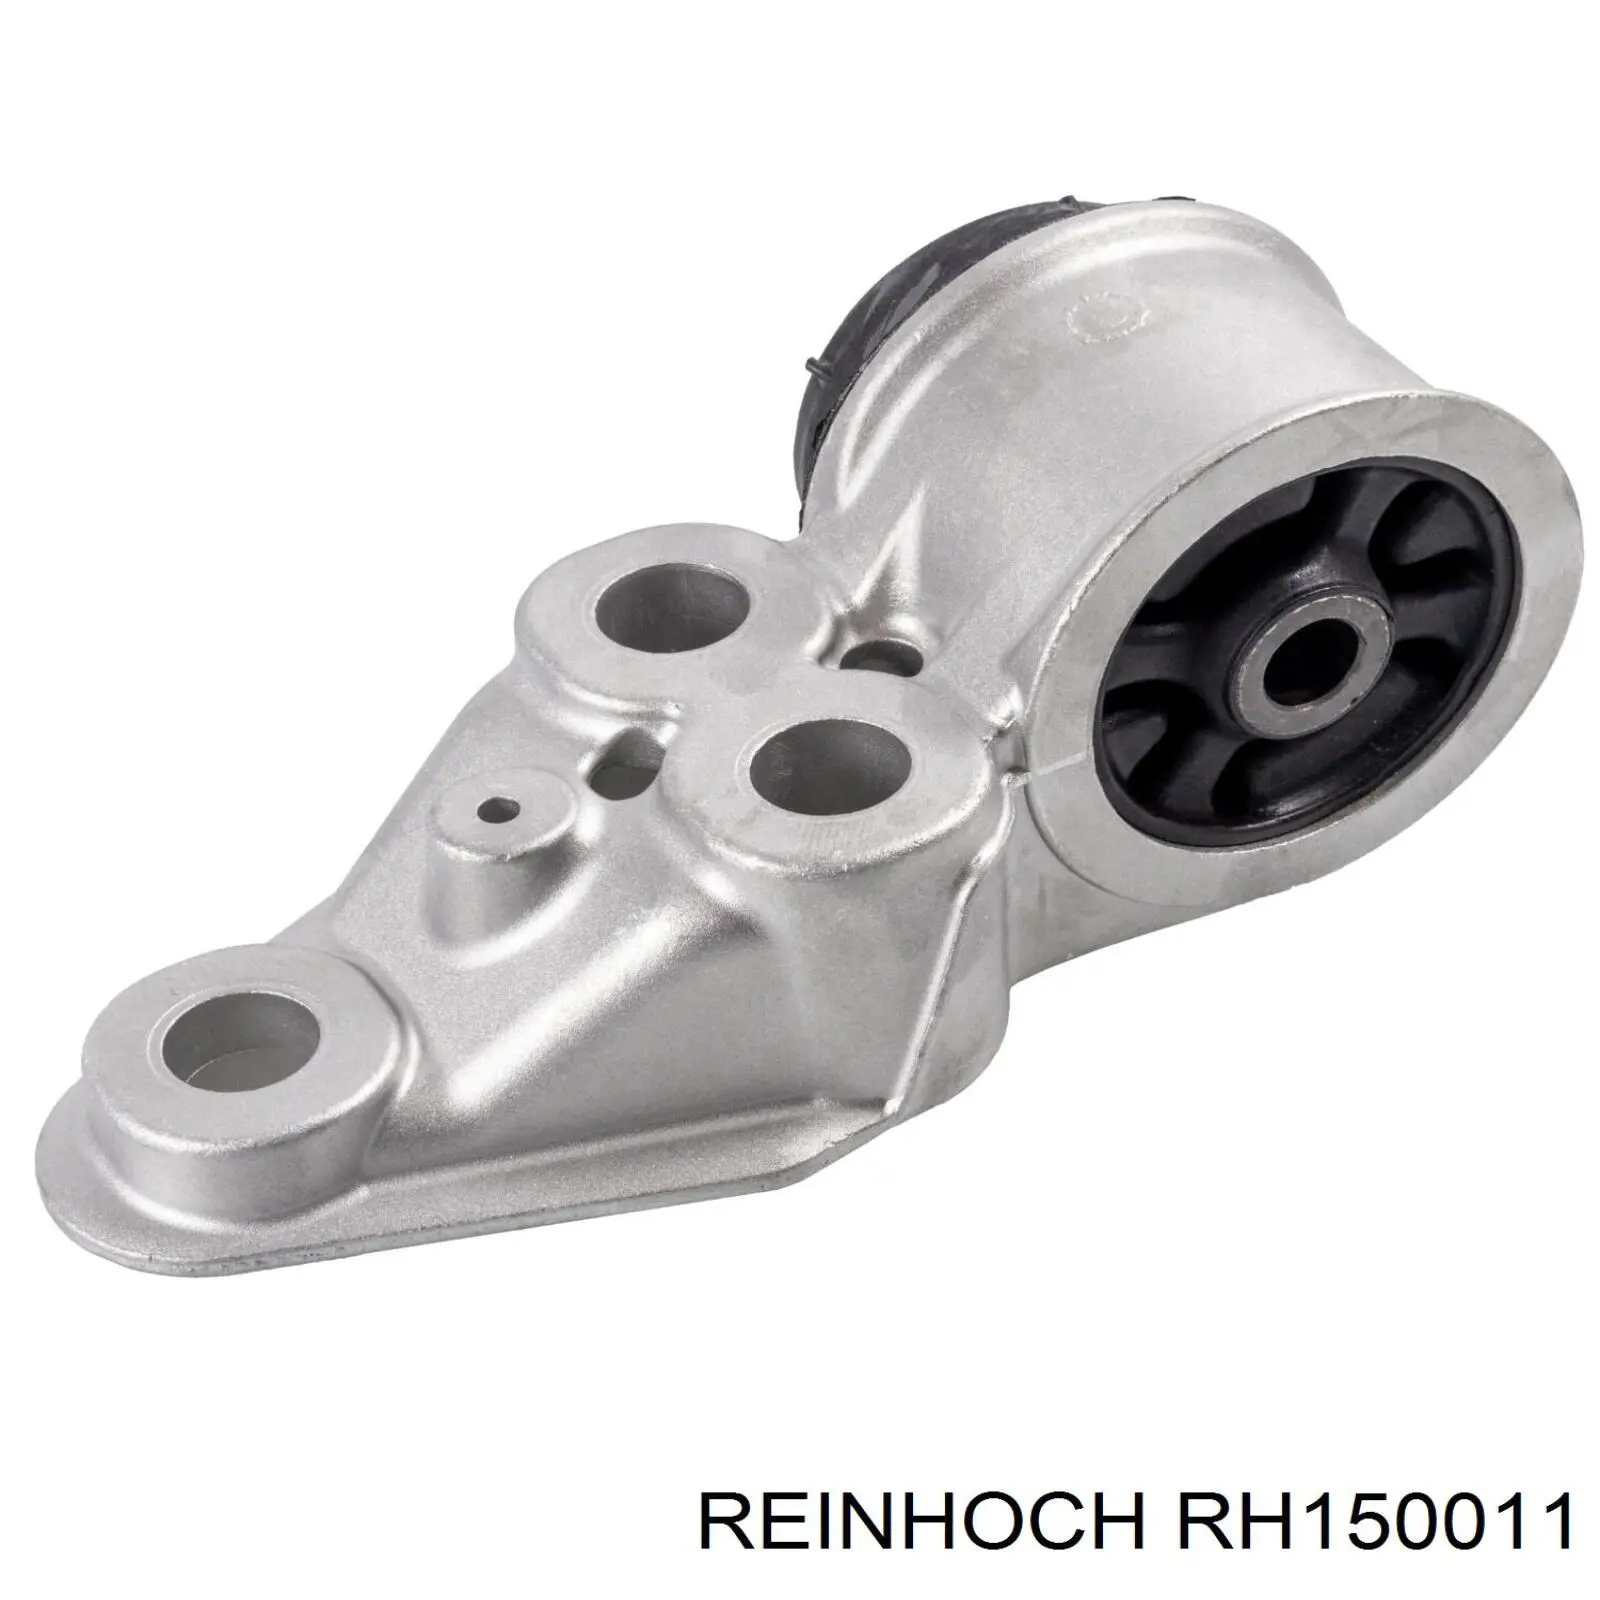 RH150011 Reinhoch suspensión, cuerpo del eje trasero